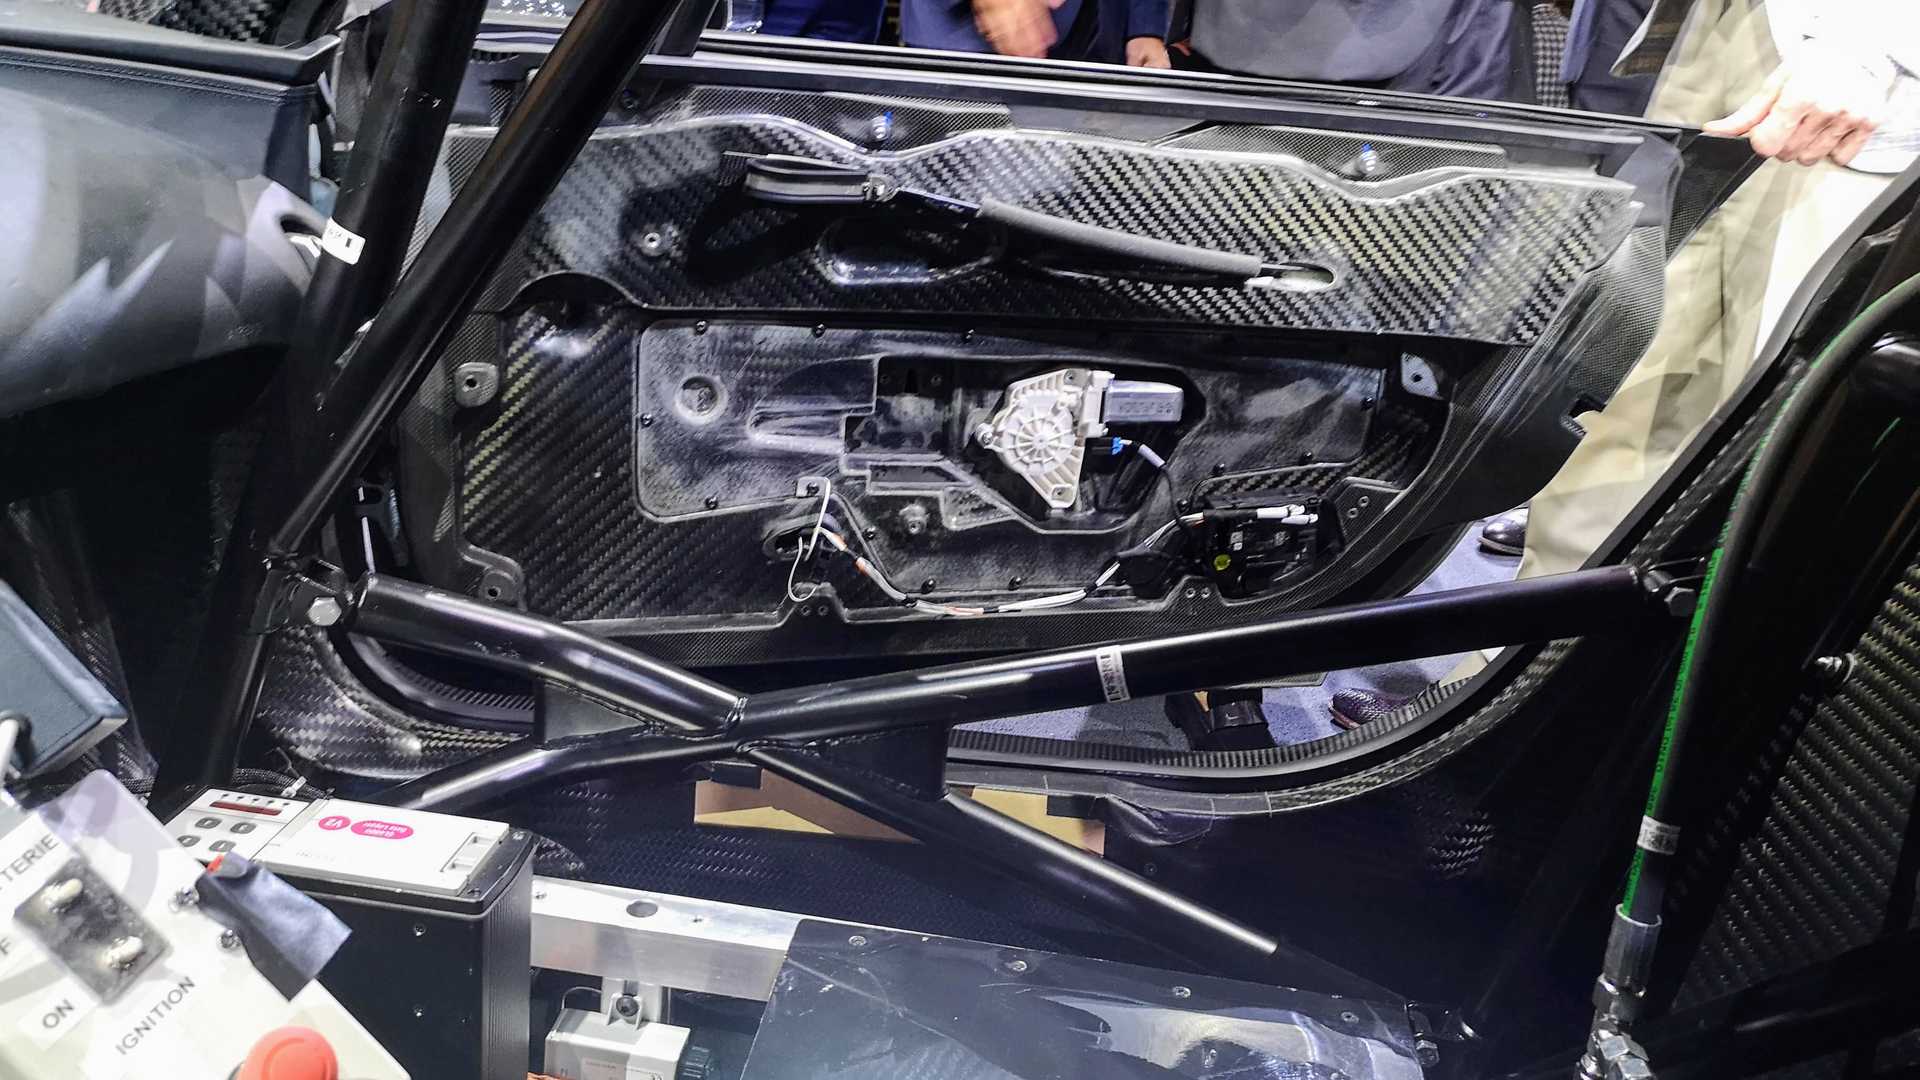 بوجاتي شيرون سوبر سبورت أقوى سيارة في العالم تنطلق رسمياً 28